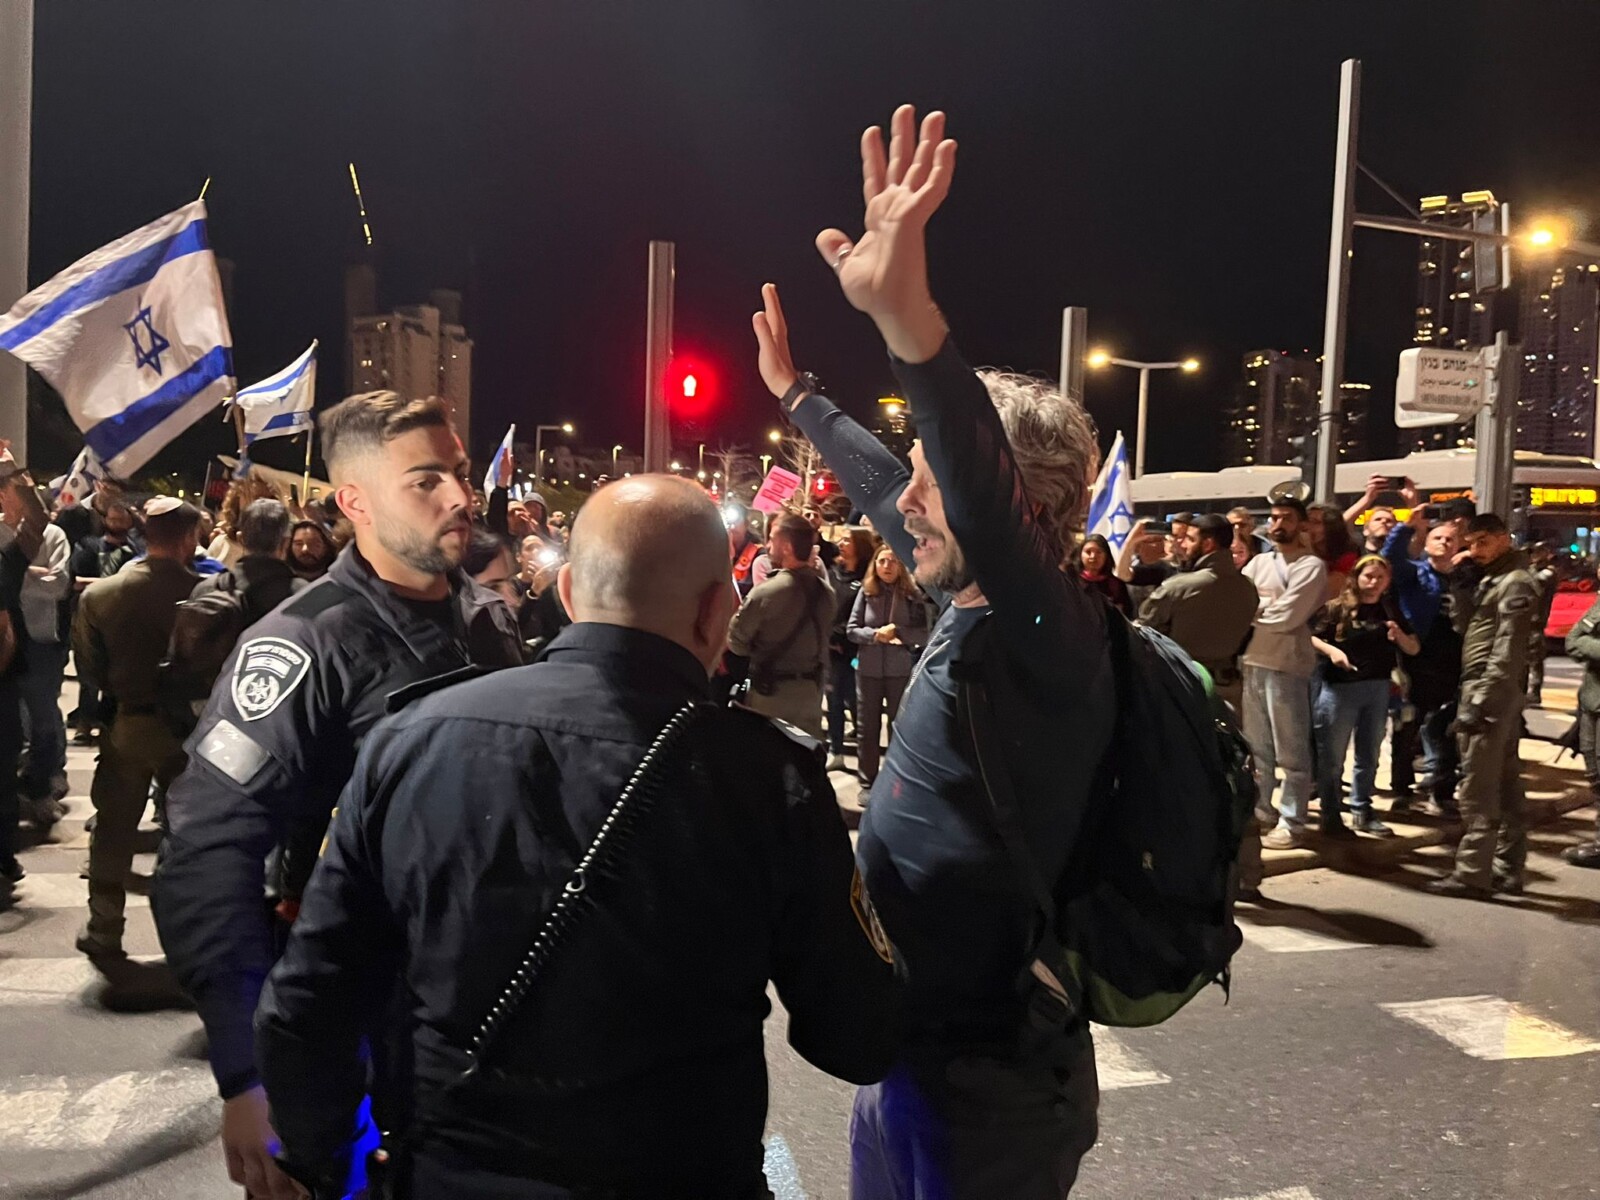 מפגין למען החזרת החטופים מעוכב על ידי שוטרים סמוך למחלף ארלוזורוב בתל אביב (צילום: אורן דגן)